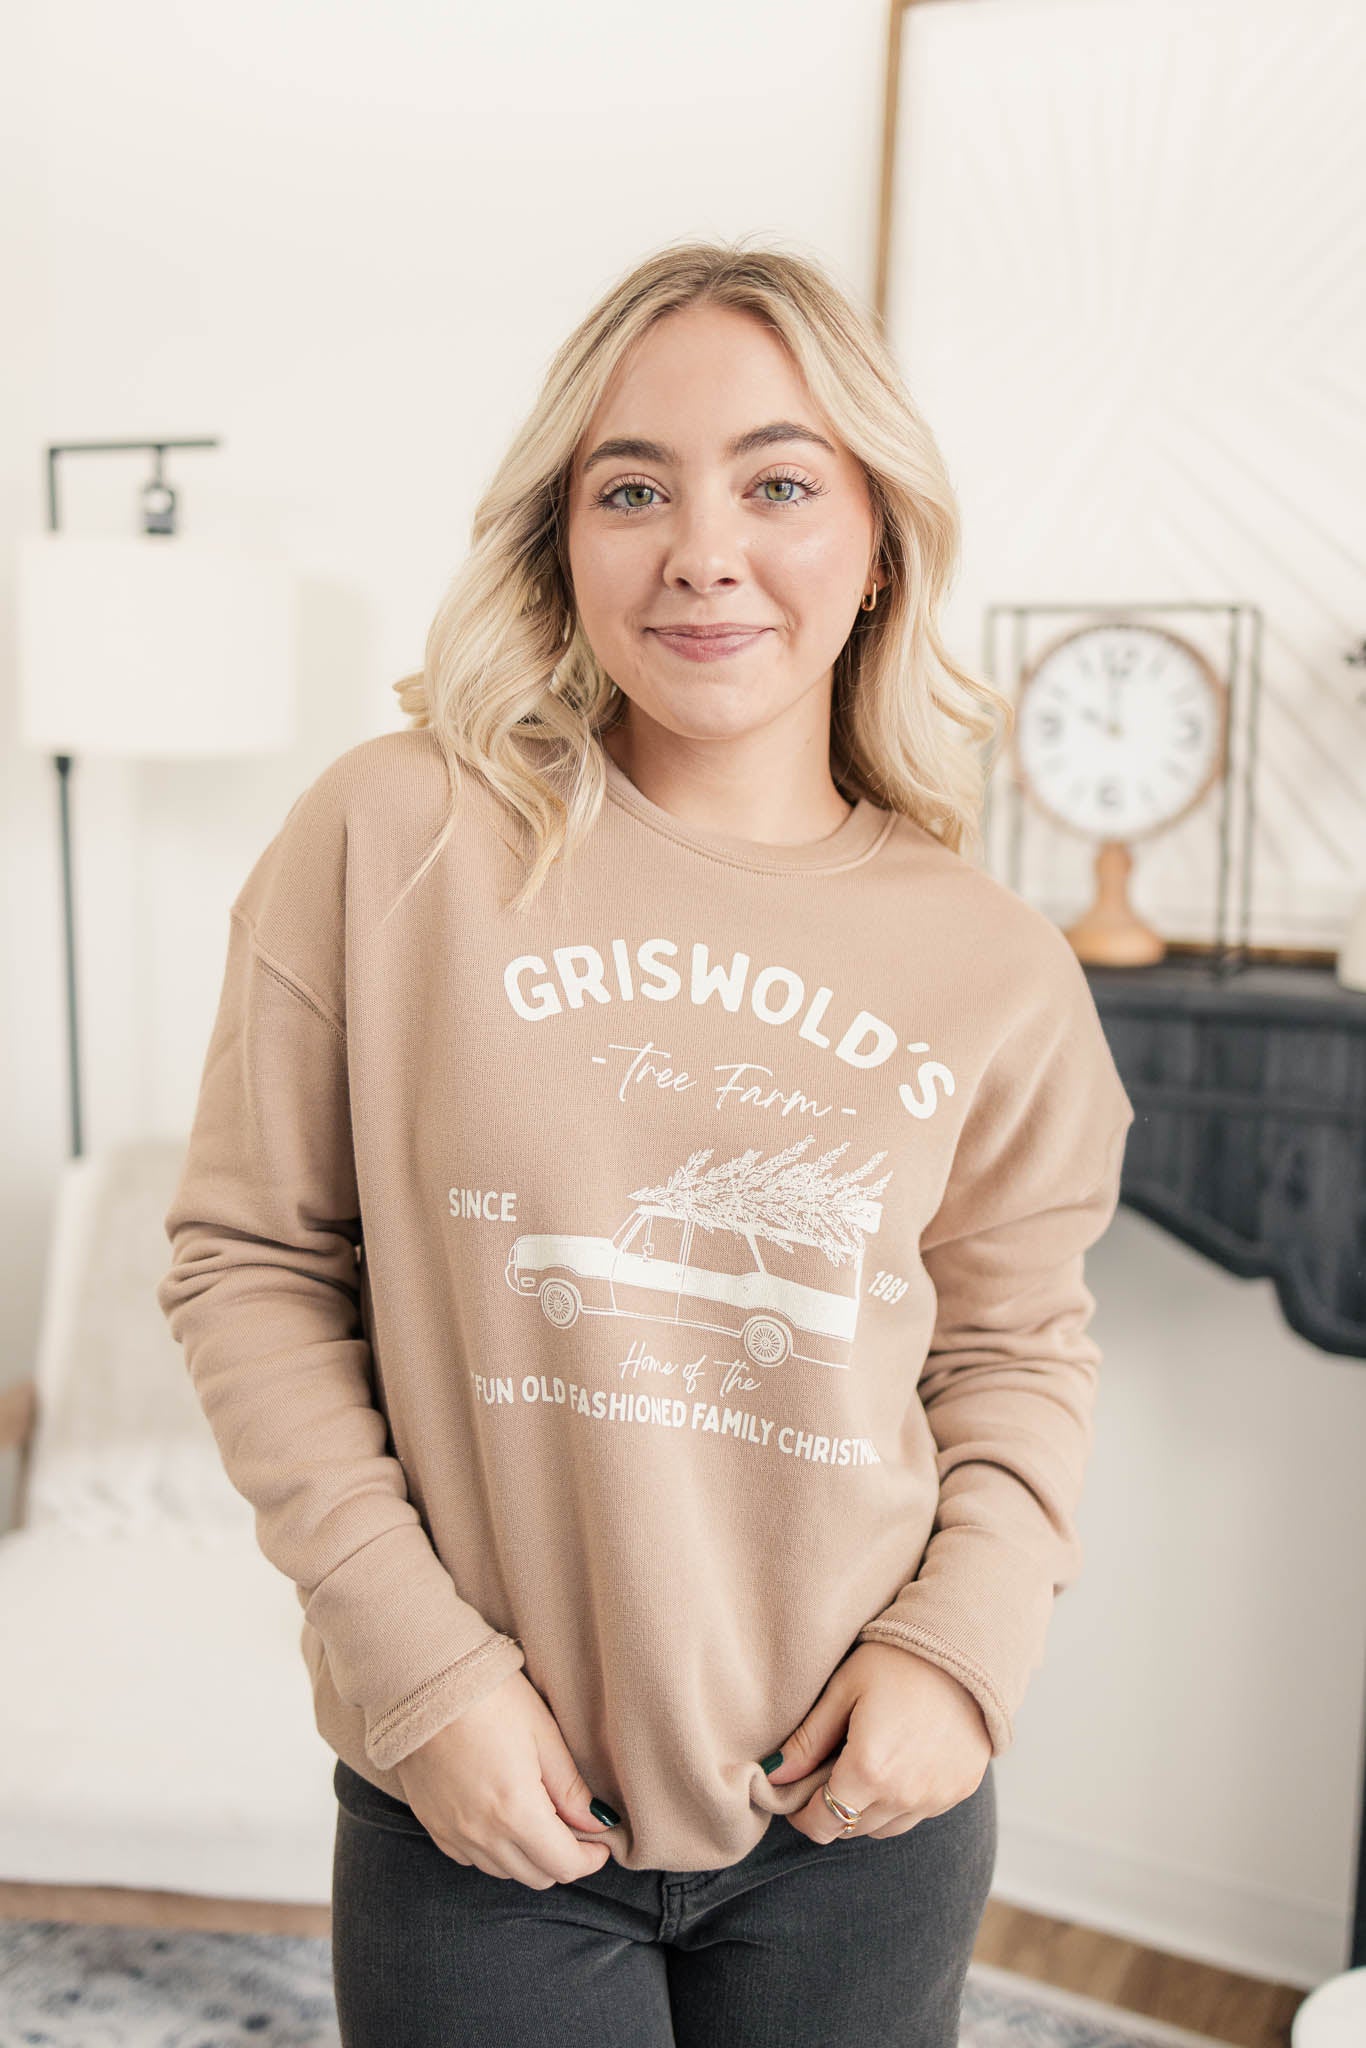 Griswold's Sweatshirt